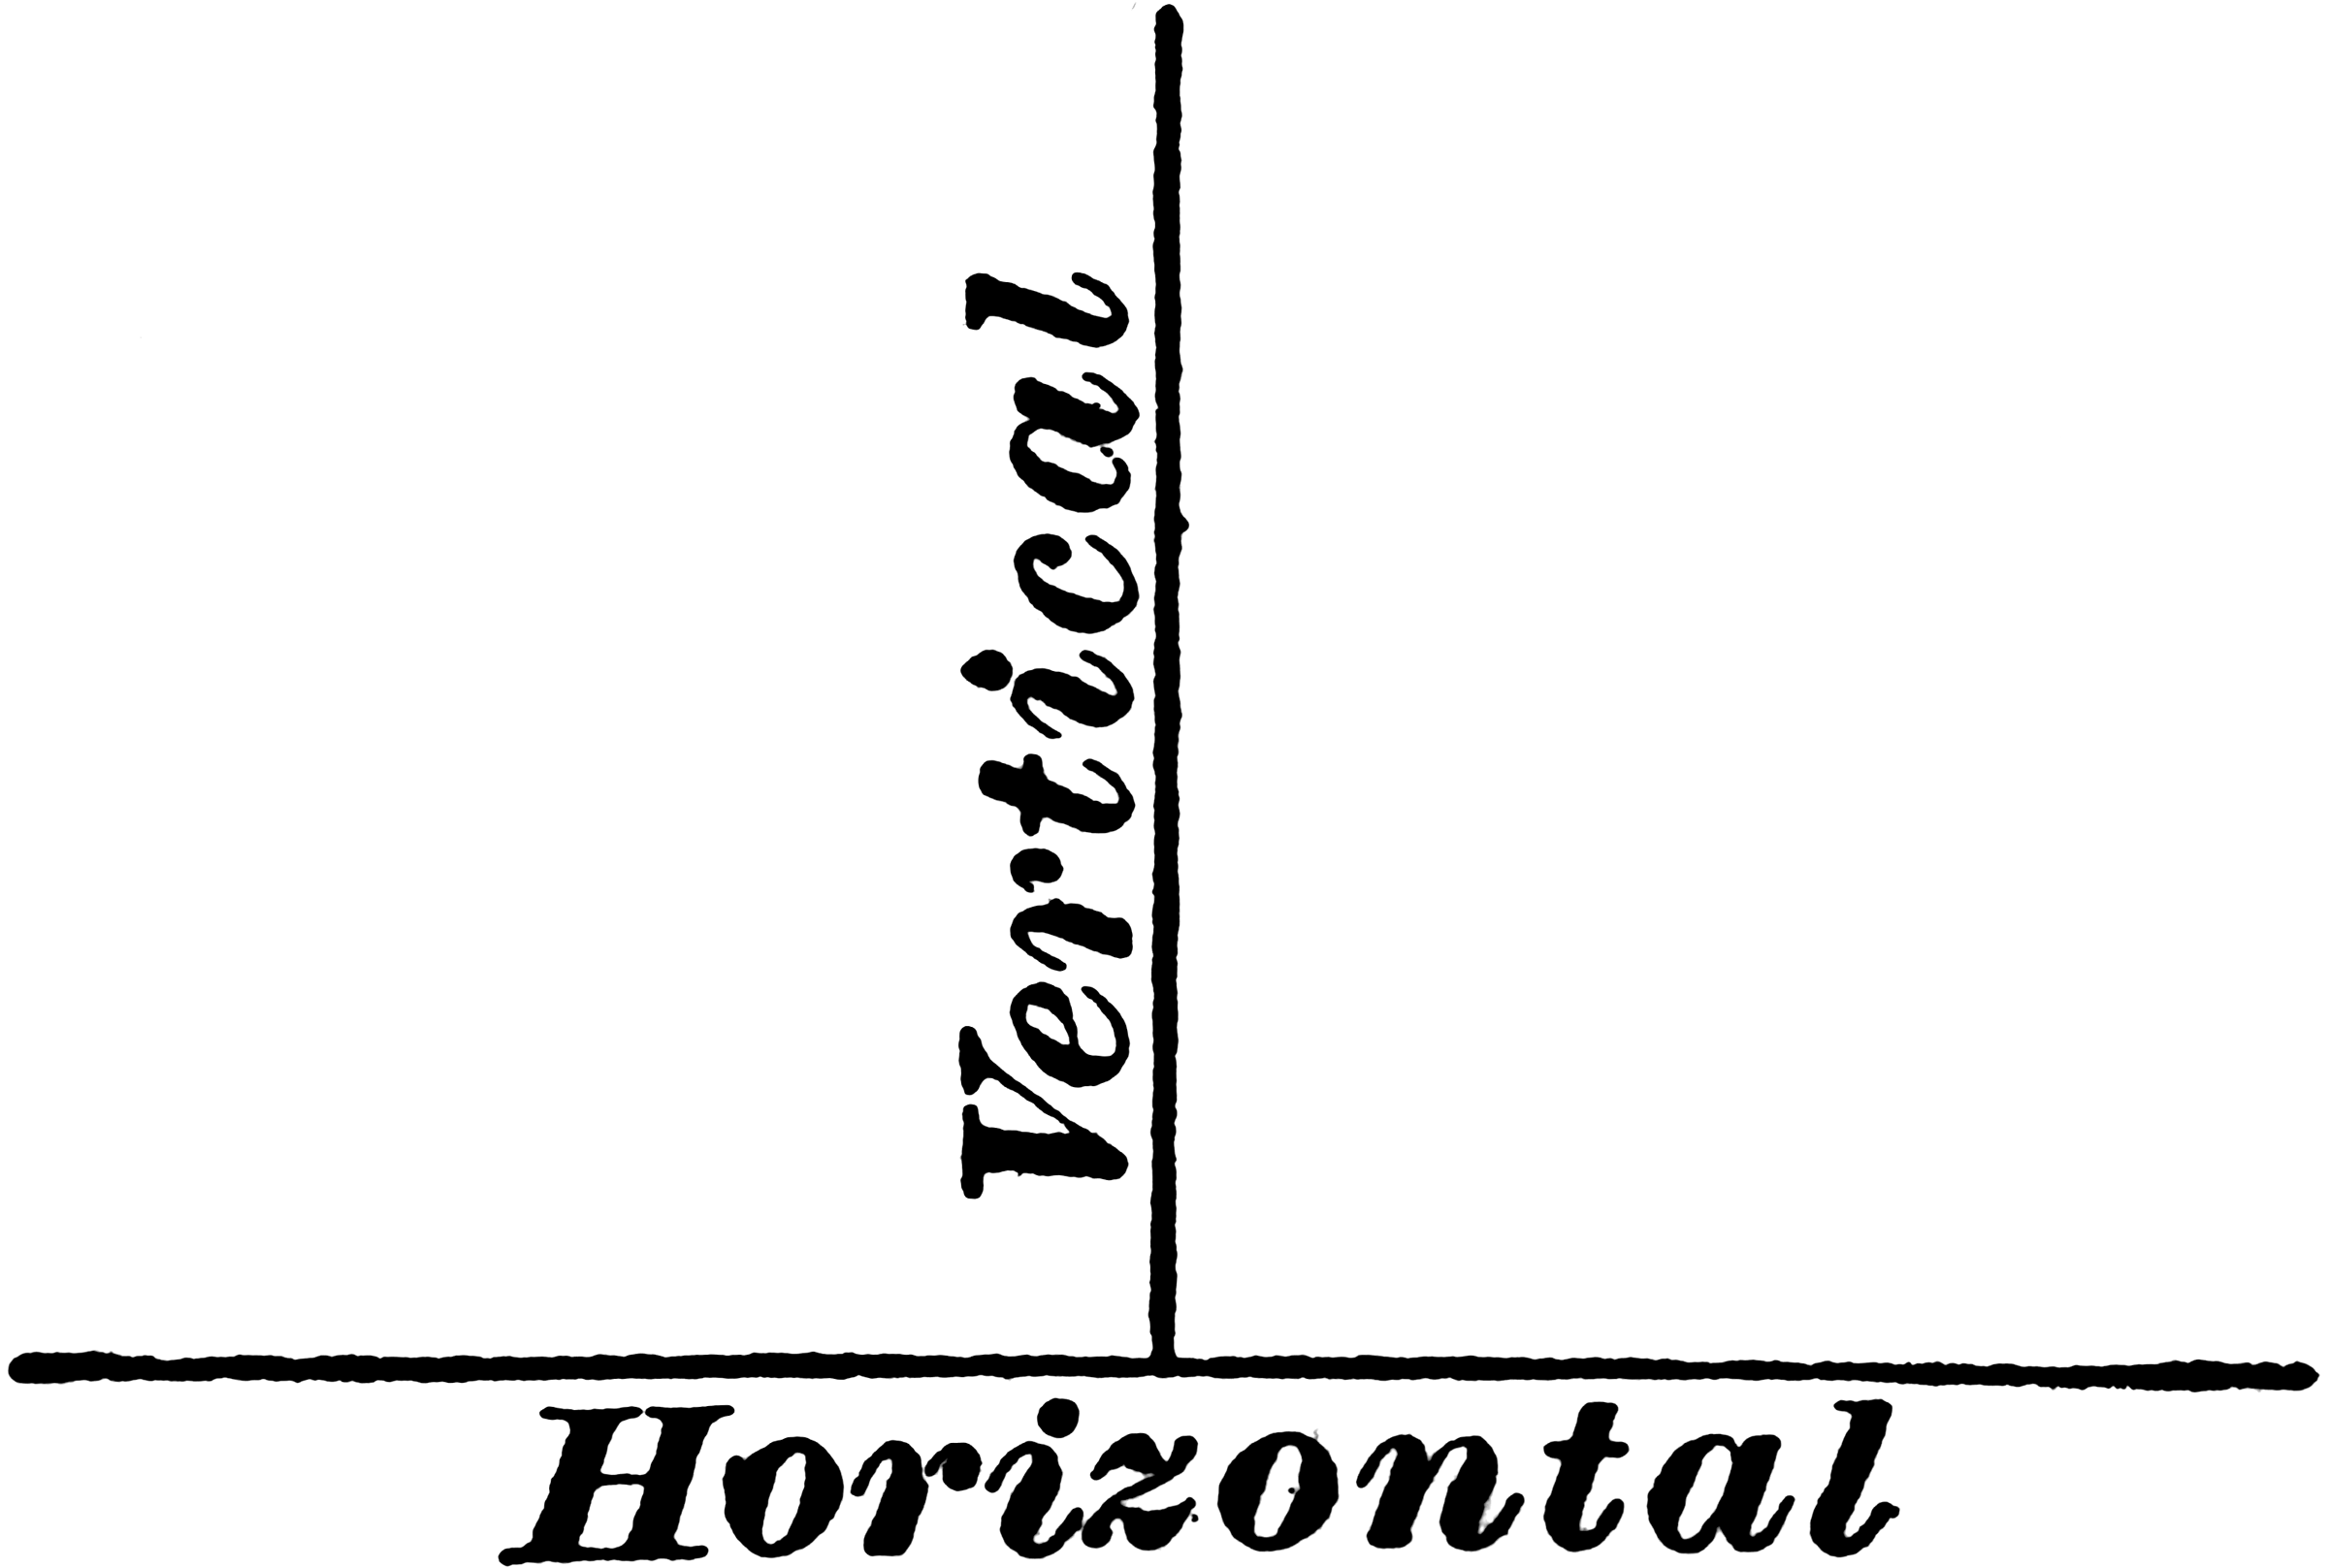 ¿Qué es vertical y horizontal?